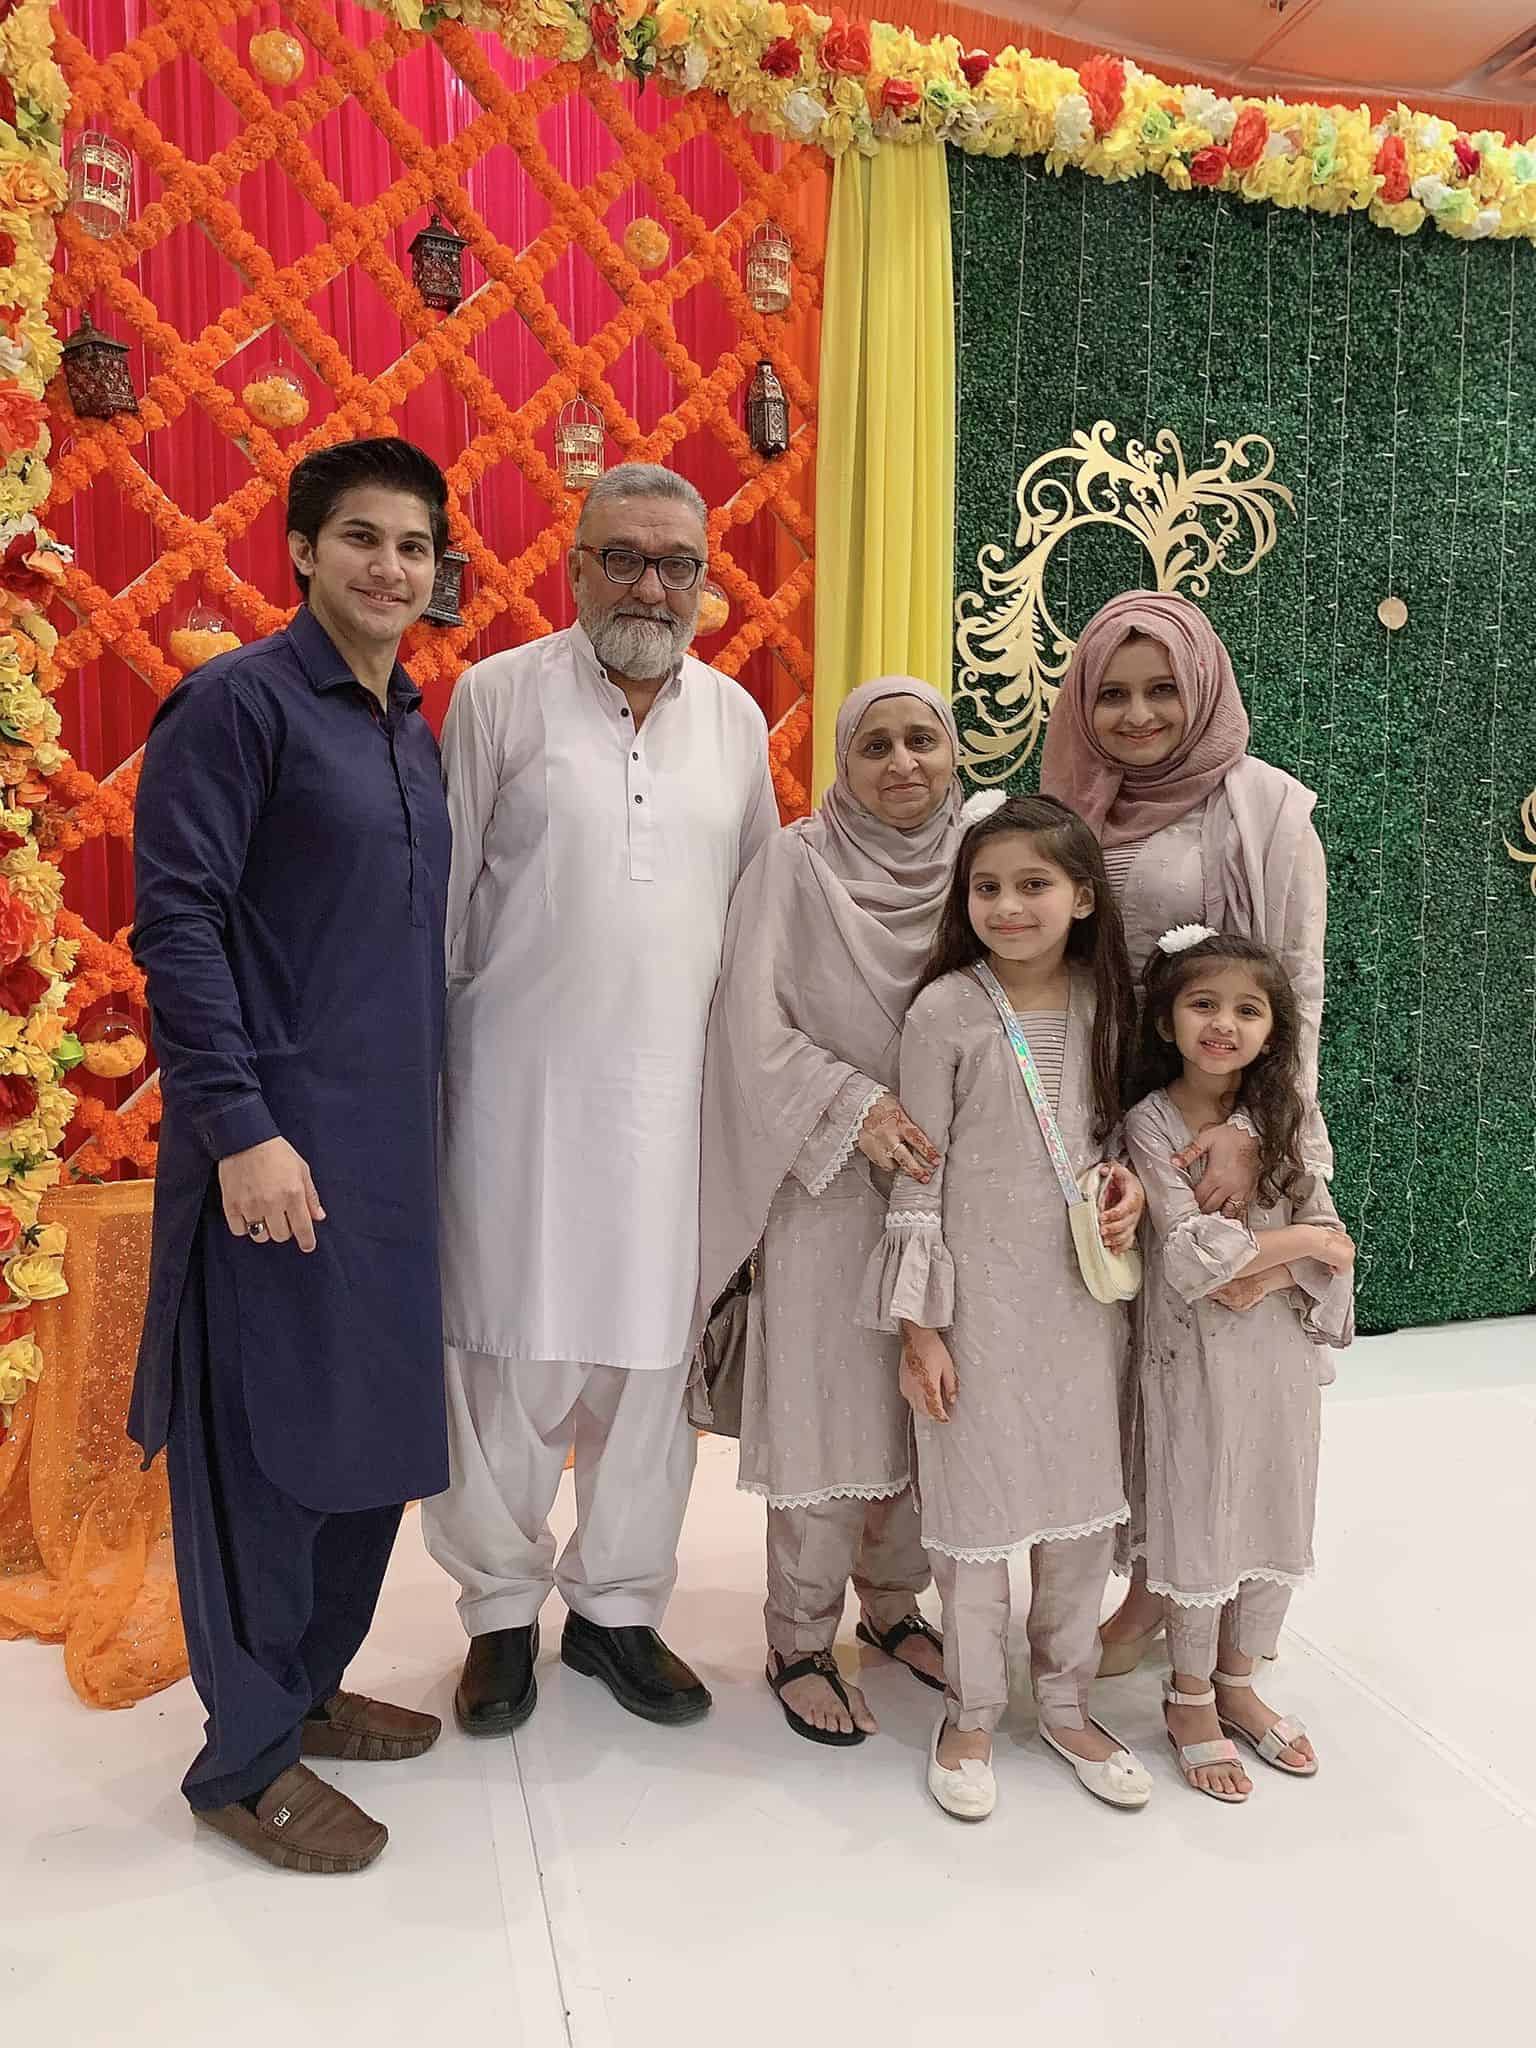 Family photo taken during Eid